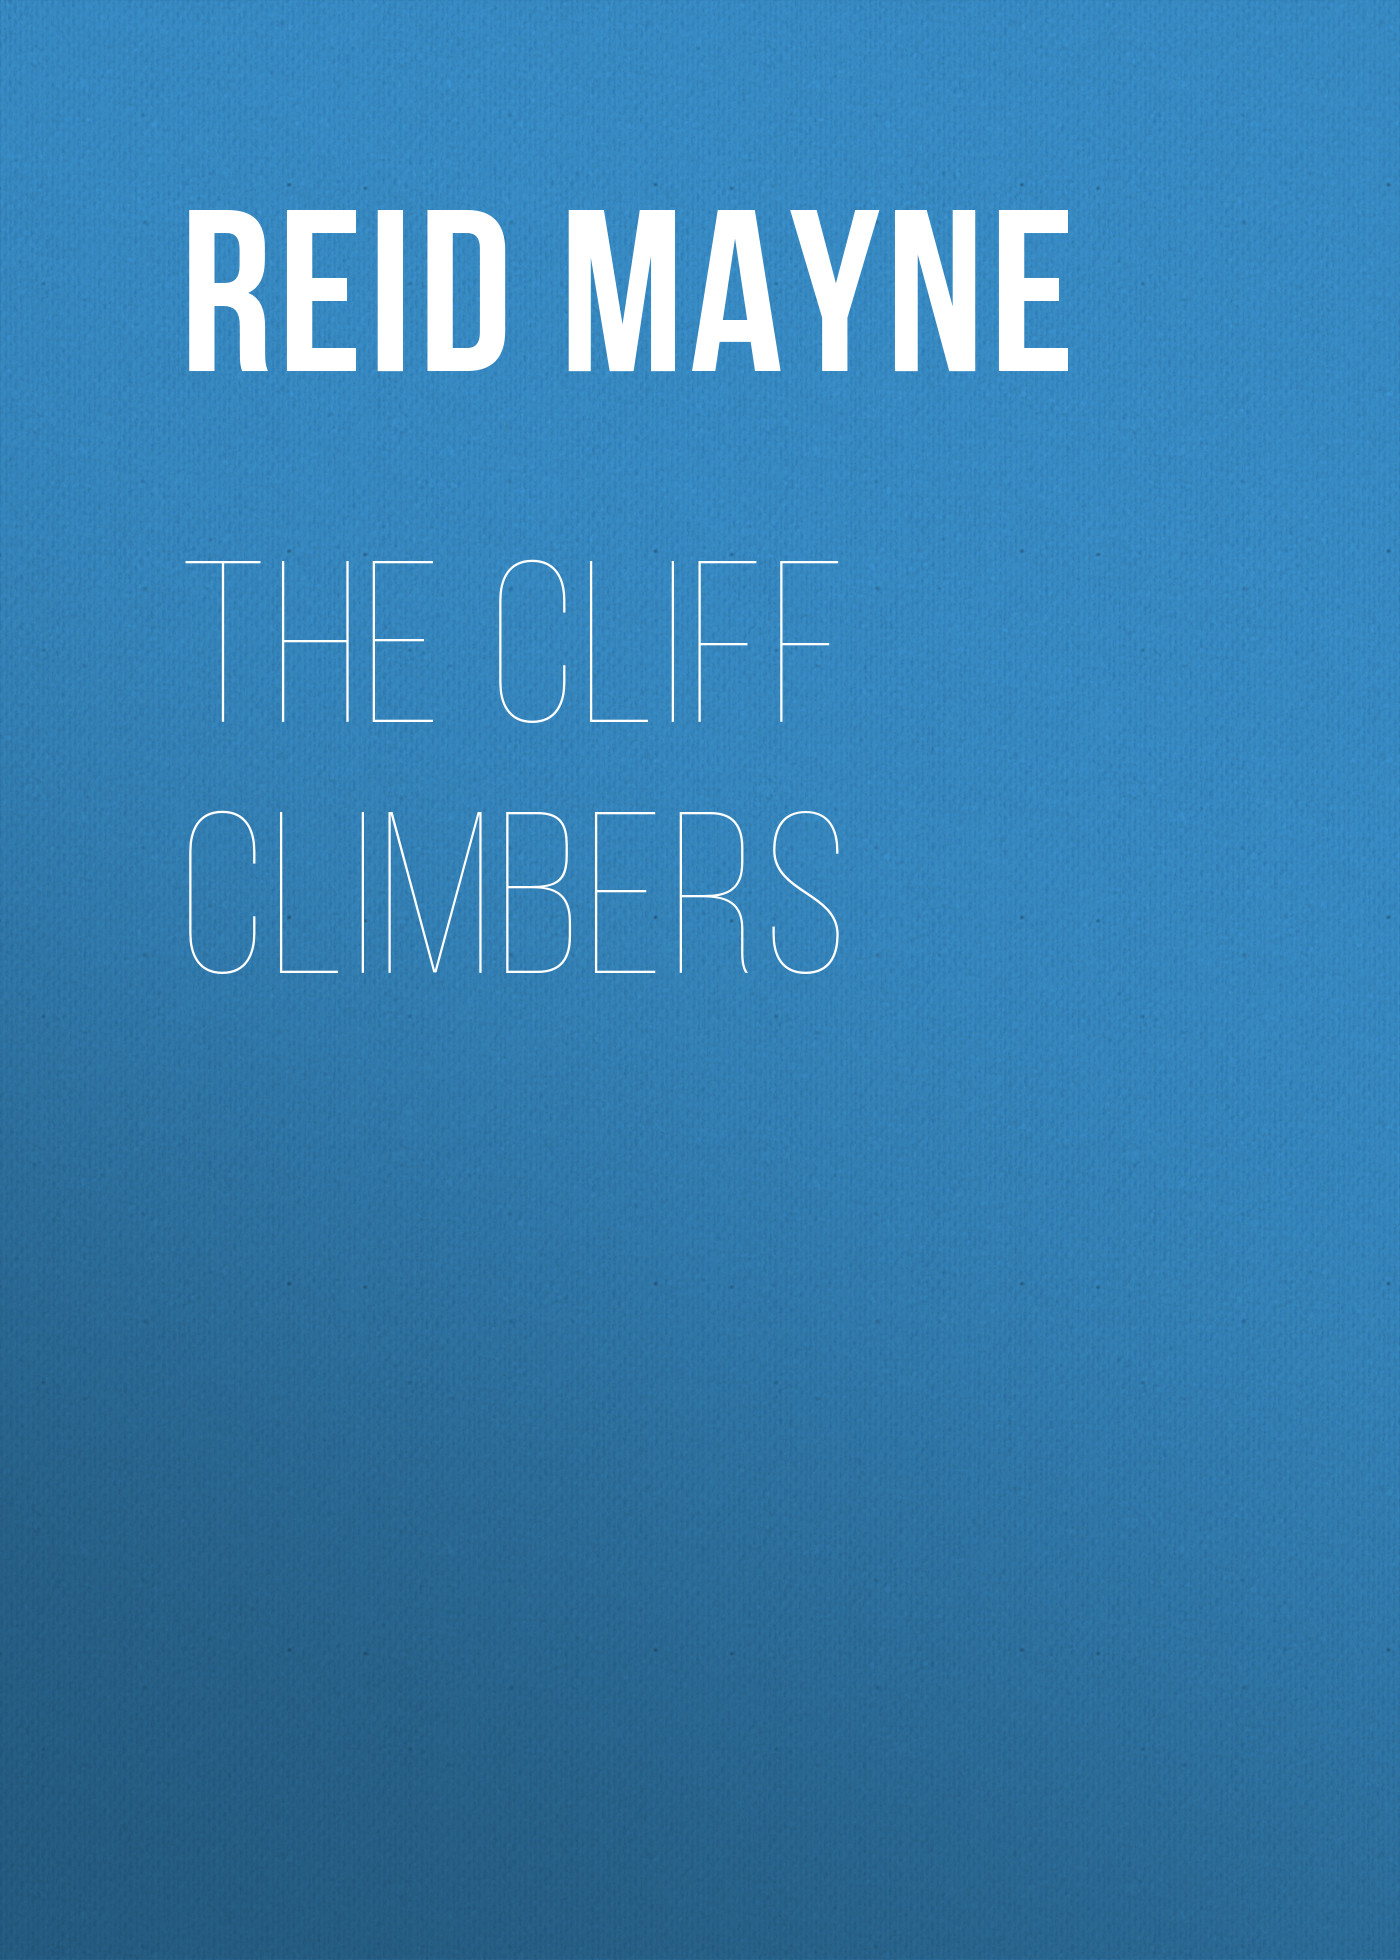 Книга The Cliff Climbers из серии , созданная Mayne Reid, может относится к жанру Литература 19 века, Зарубежная старинная литература, Зарубежная классика, Зарубежные детские книги. Стоимость электронной книги The Cliff Climbers с идентификатором 25449620 составляет 0 руб.